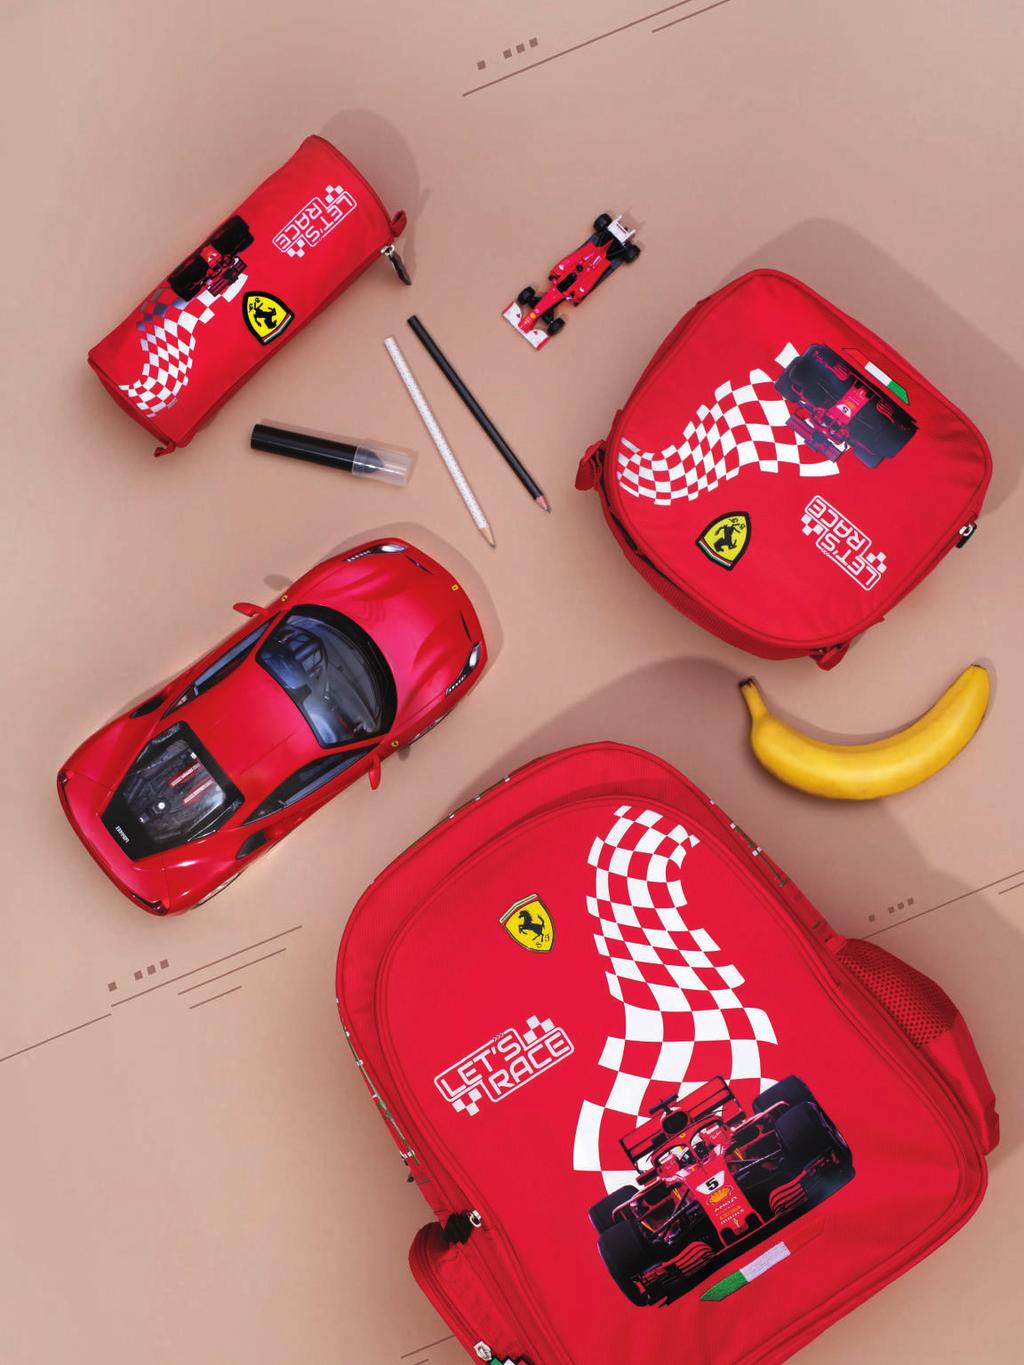 AED 29 مقلمة فيراري Ferrari Race Time Pencil Pouch نداء إلى كل محبي السرعة وسباقات الفورموال 1! انضموا إلى سباق التميز الدراسي مع هذه المجموعة المذهلة من المستلزمات الدراسية التي تأتي بلونين مميزين!